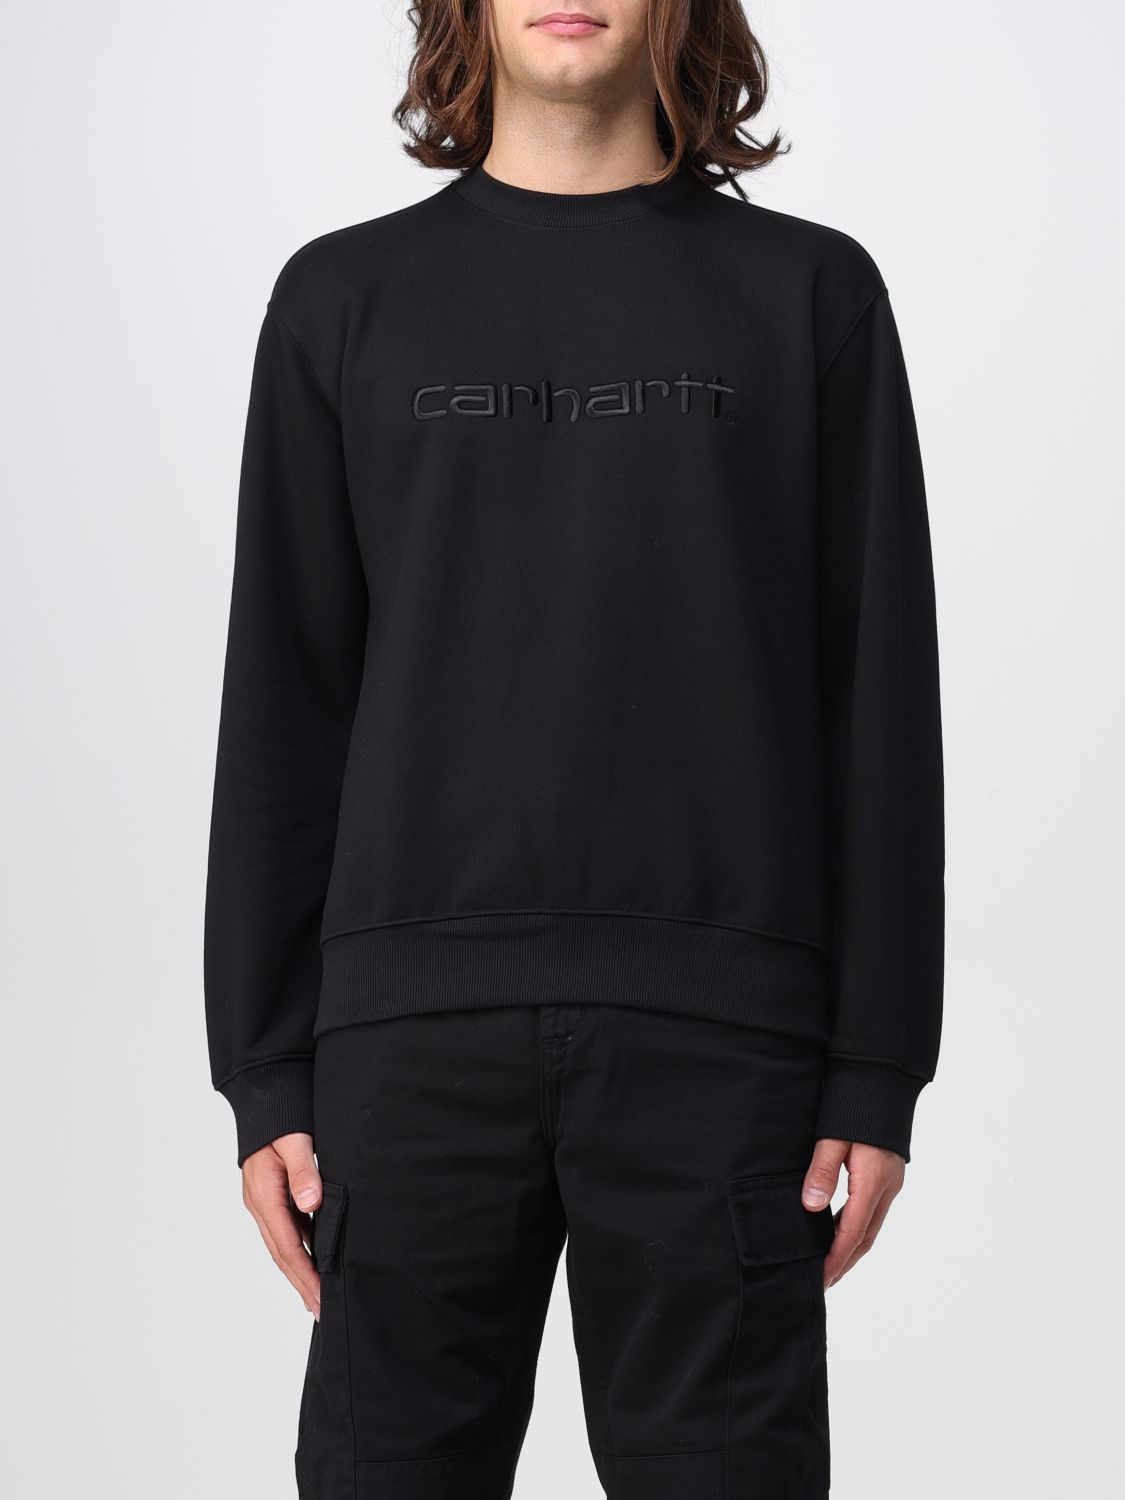 Carhartt Sweatshirt  Wip Herren Farbe Schwarz 1 In Black 1